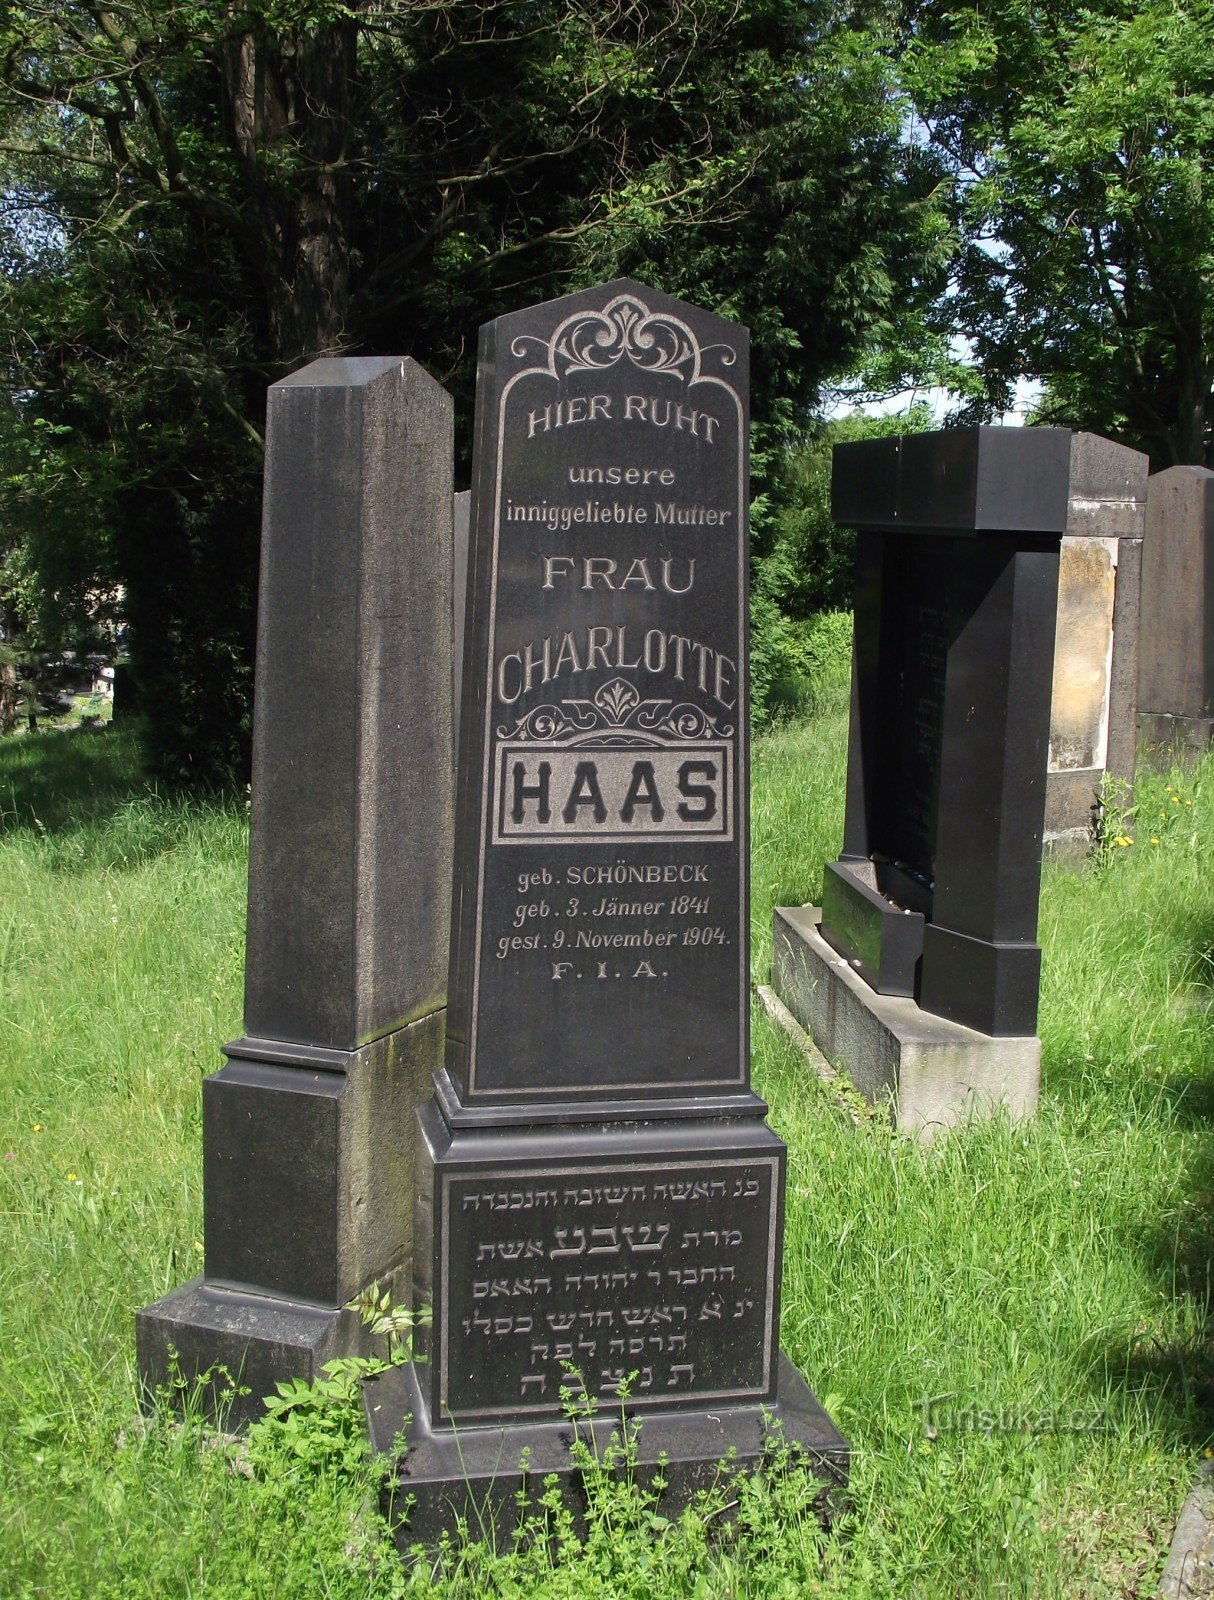 Valašské Meziříčí – cimetière juif